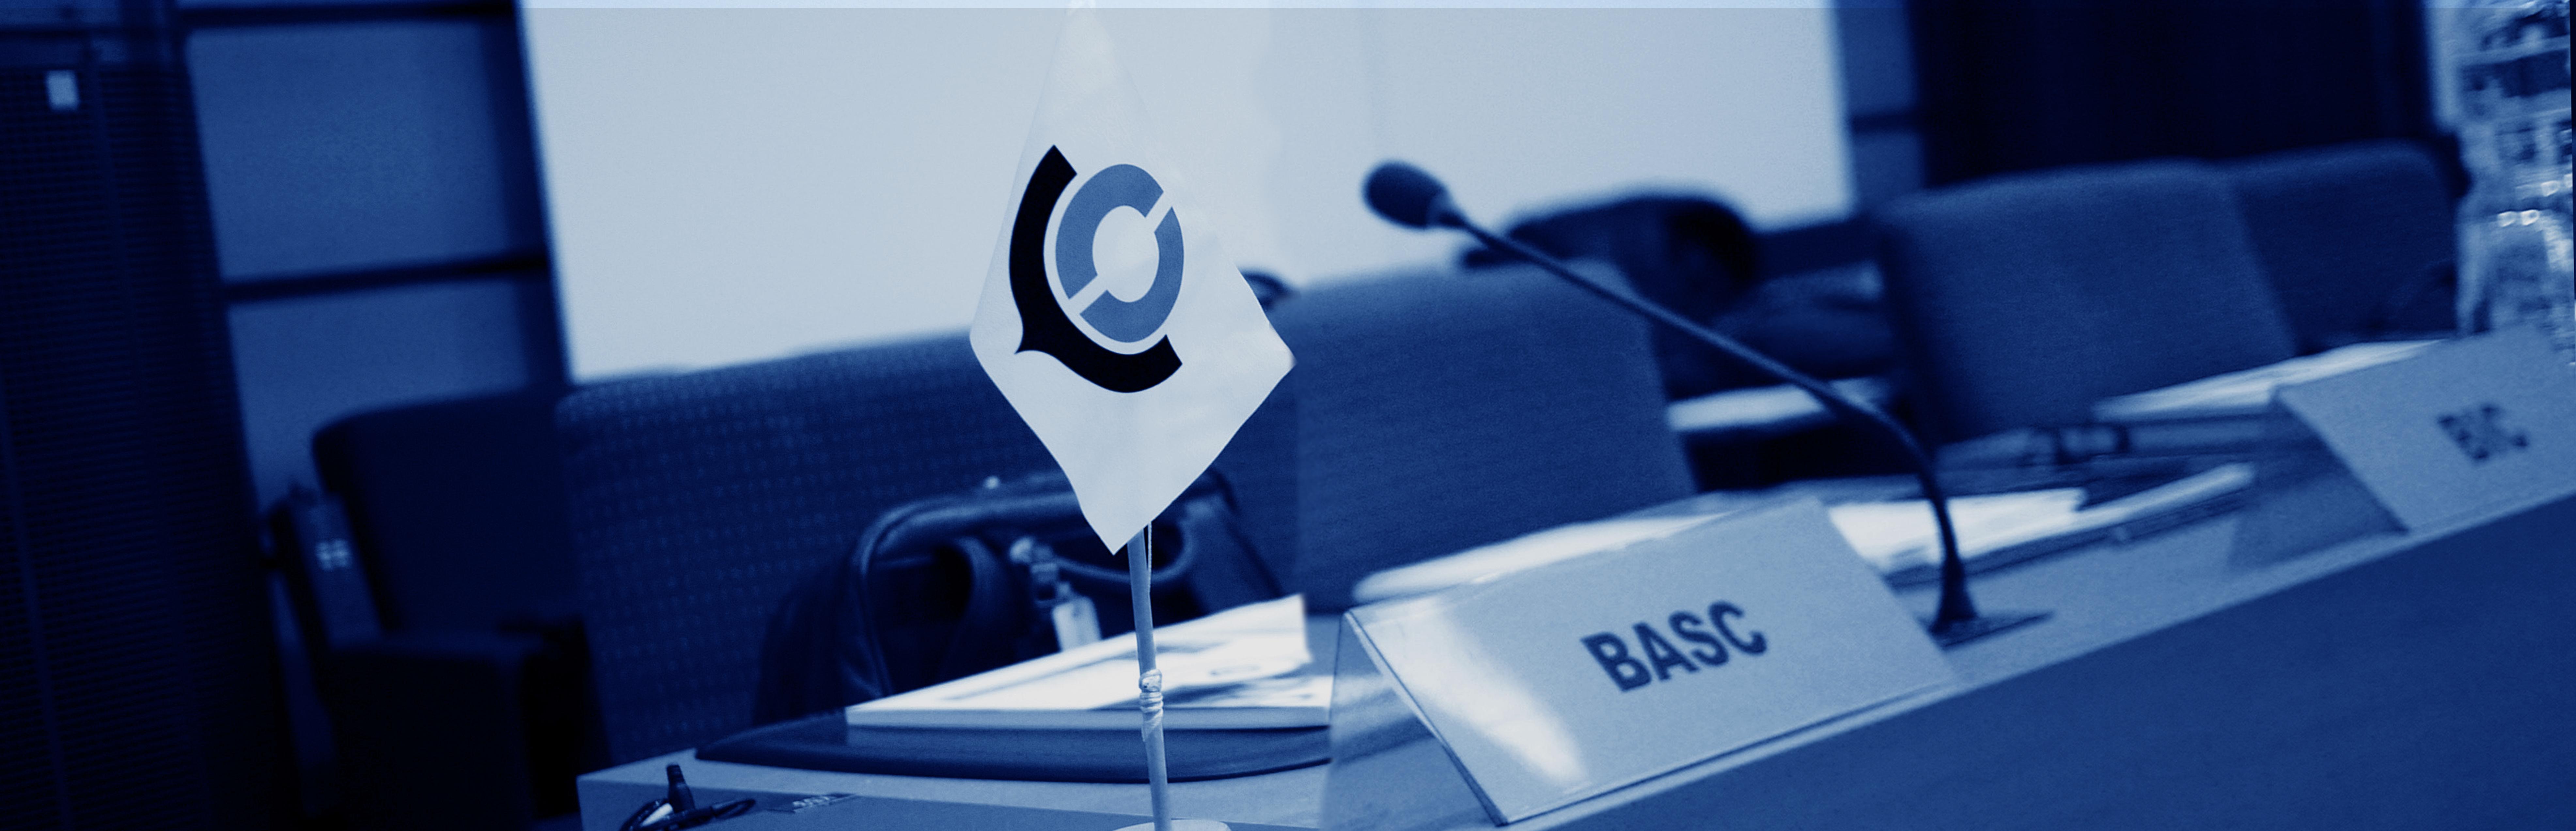 La OMA reconoce a BASC como un importante programa de seguridad global al incluirlo como referencia en su nueva Guía para Validadores OEA.